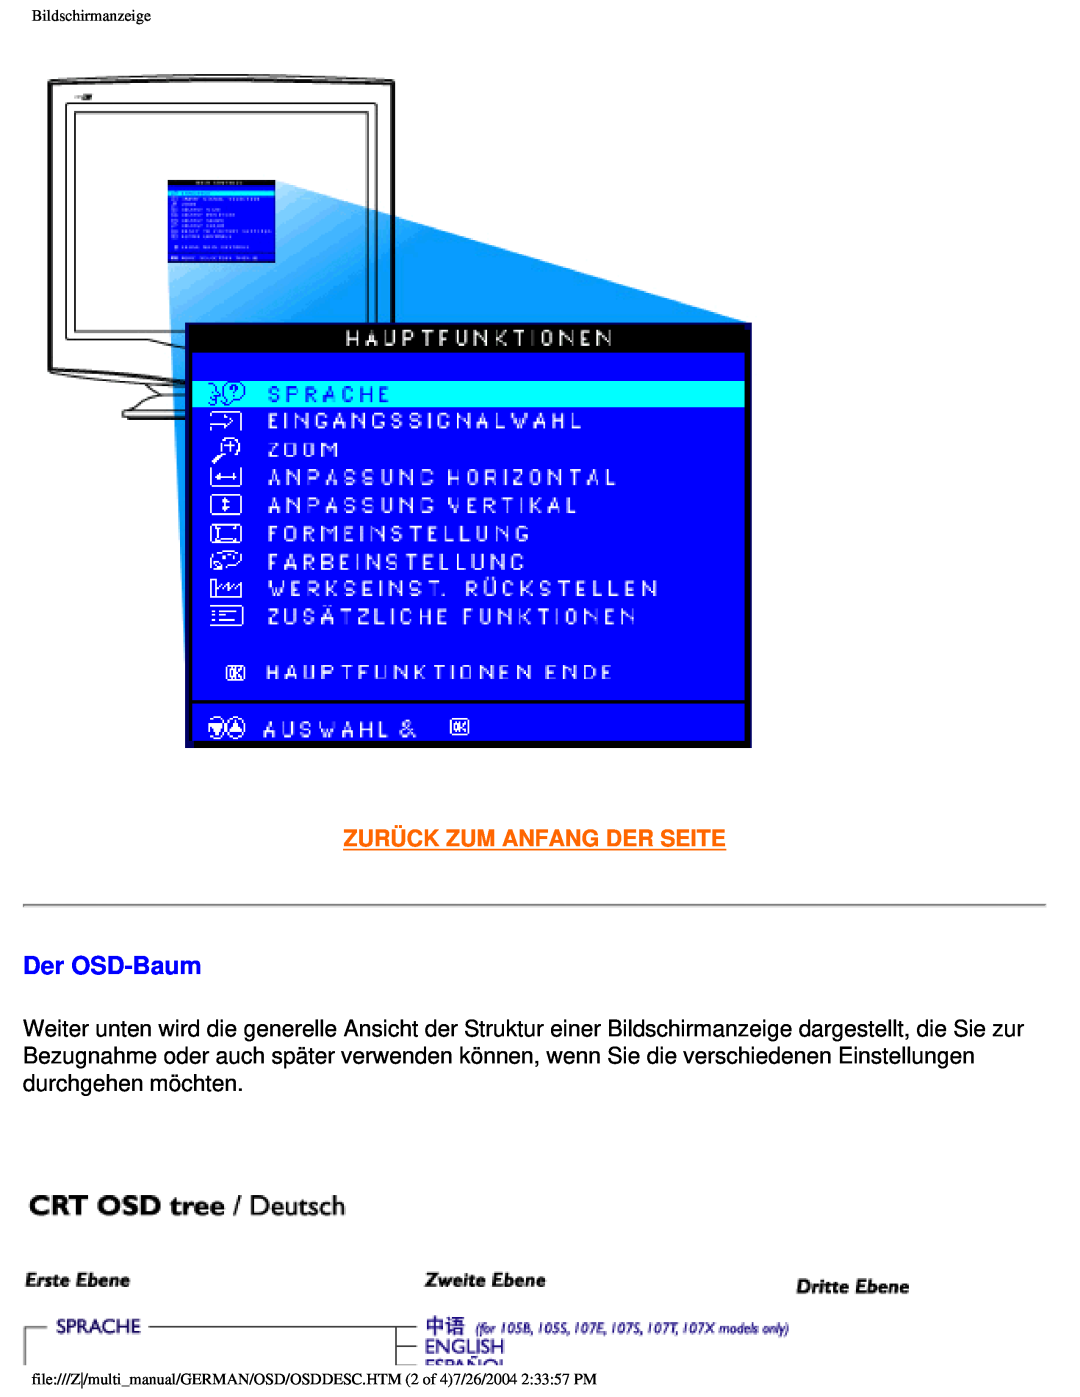 Philips 107X2 user manual Der OSD-Baum, Zurück Zum Anfang Der Seite, Bildschirmanzeige 